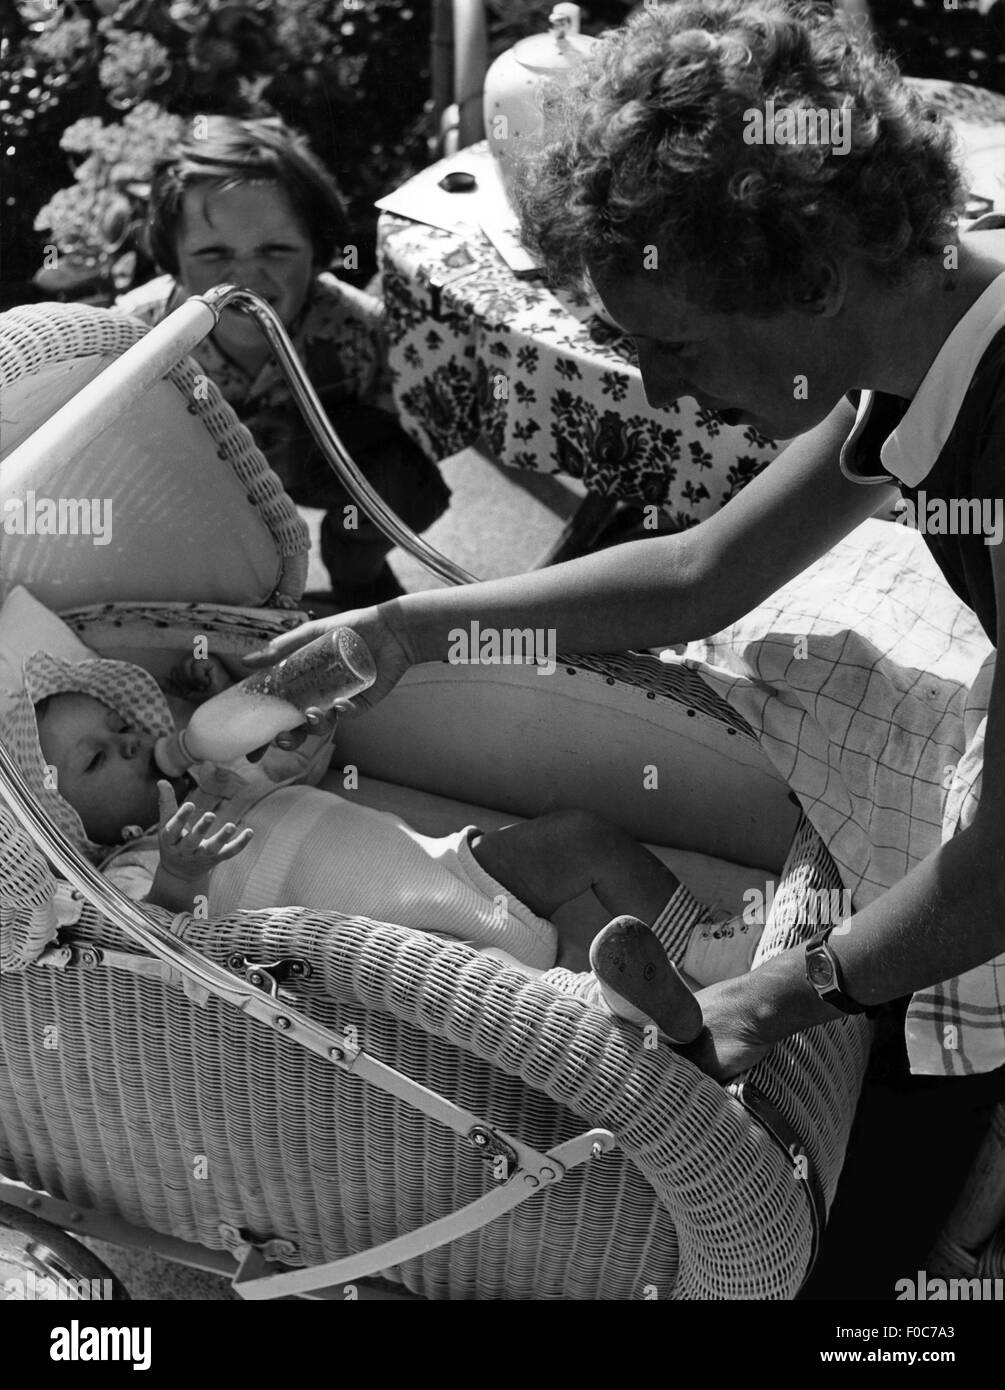 Personnes, enfant / enfants, bébés, bébé étant nourri par sa mère, années 1950, droits additionnels-Clearences-non disponible Banque D'Images